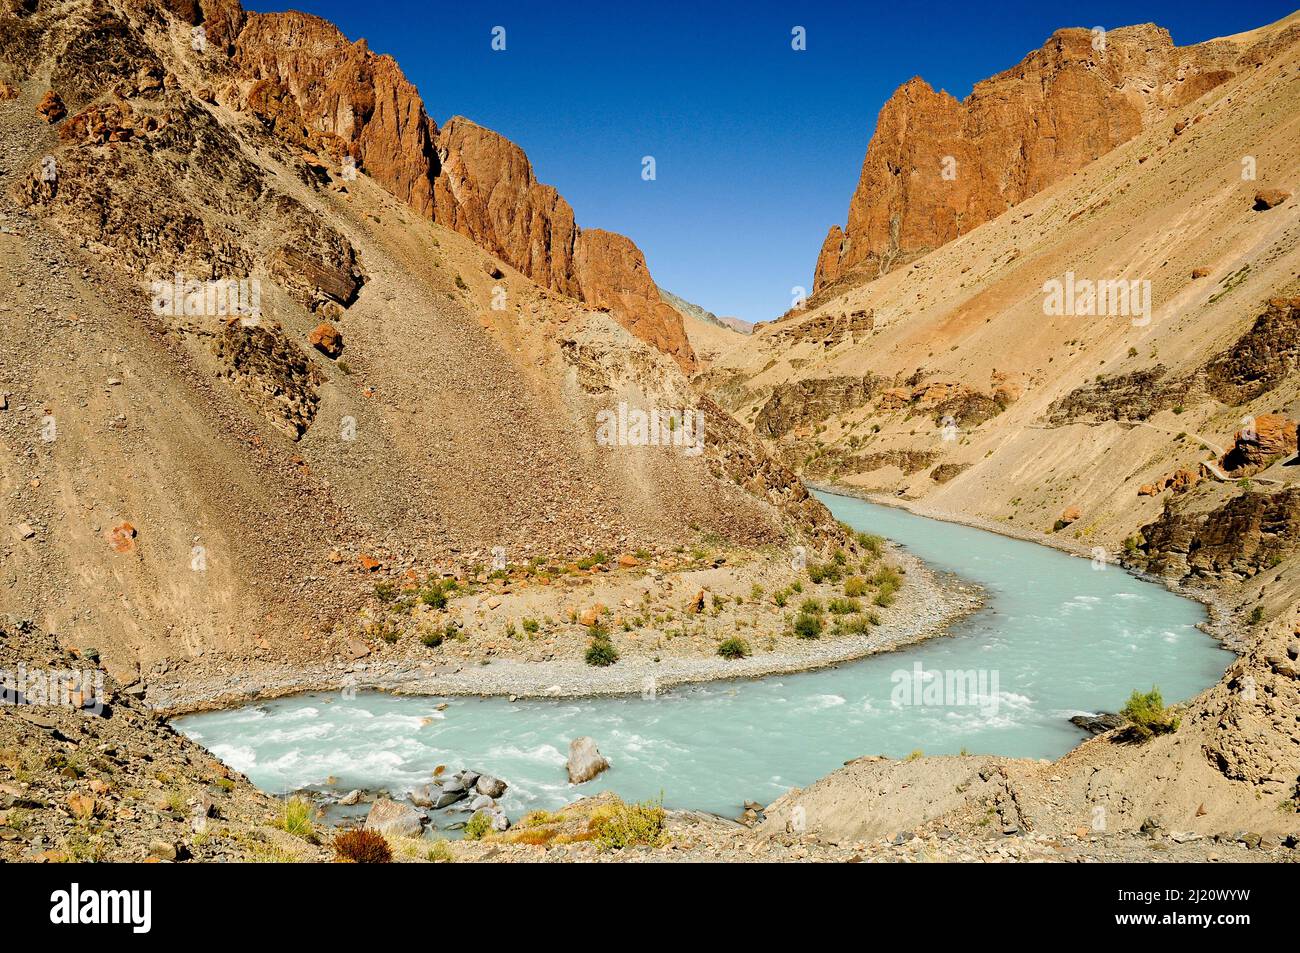 Rivière Tsarap avec de l'eau bleu pâle provenant de la fonte glaciaire et de la vallée environnante. Zanskar, Ladakh, Inde. Septembre 2011. Banque D'Images